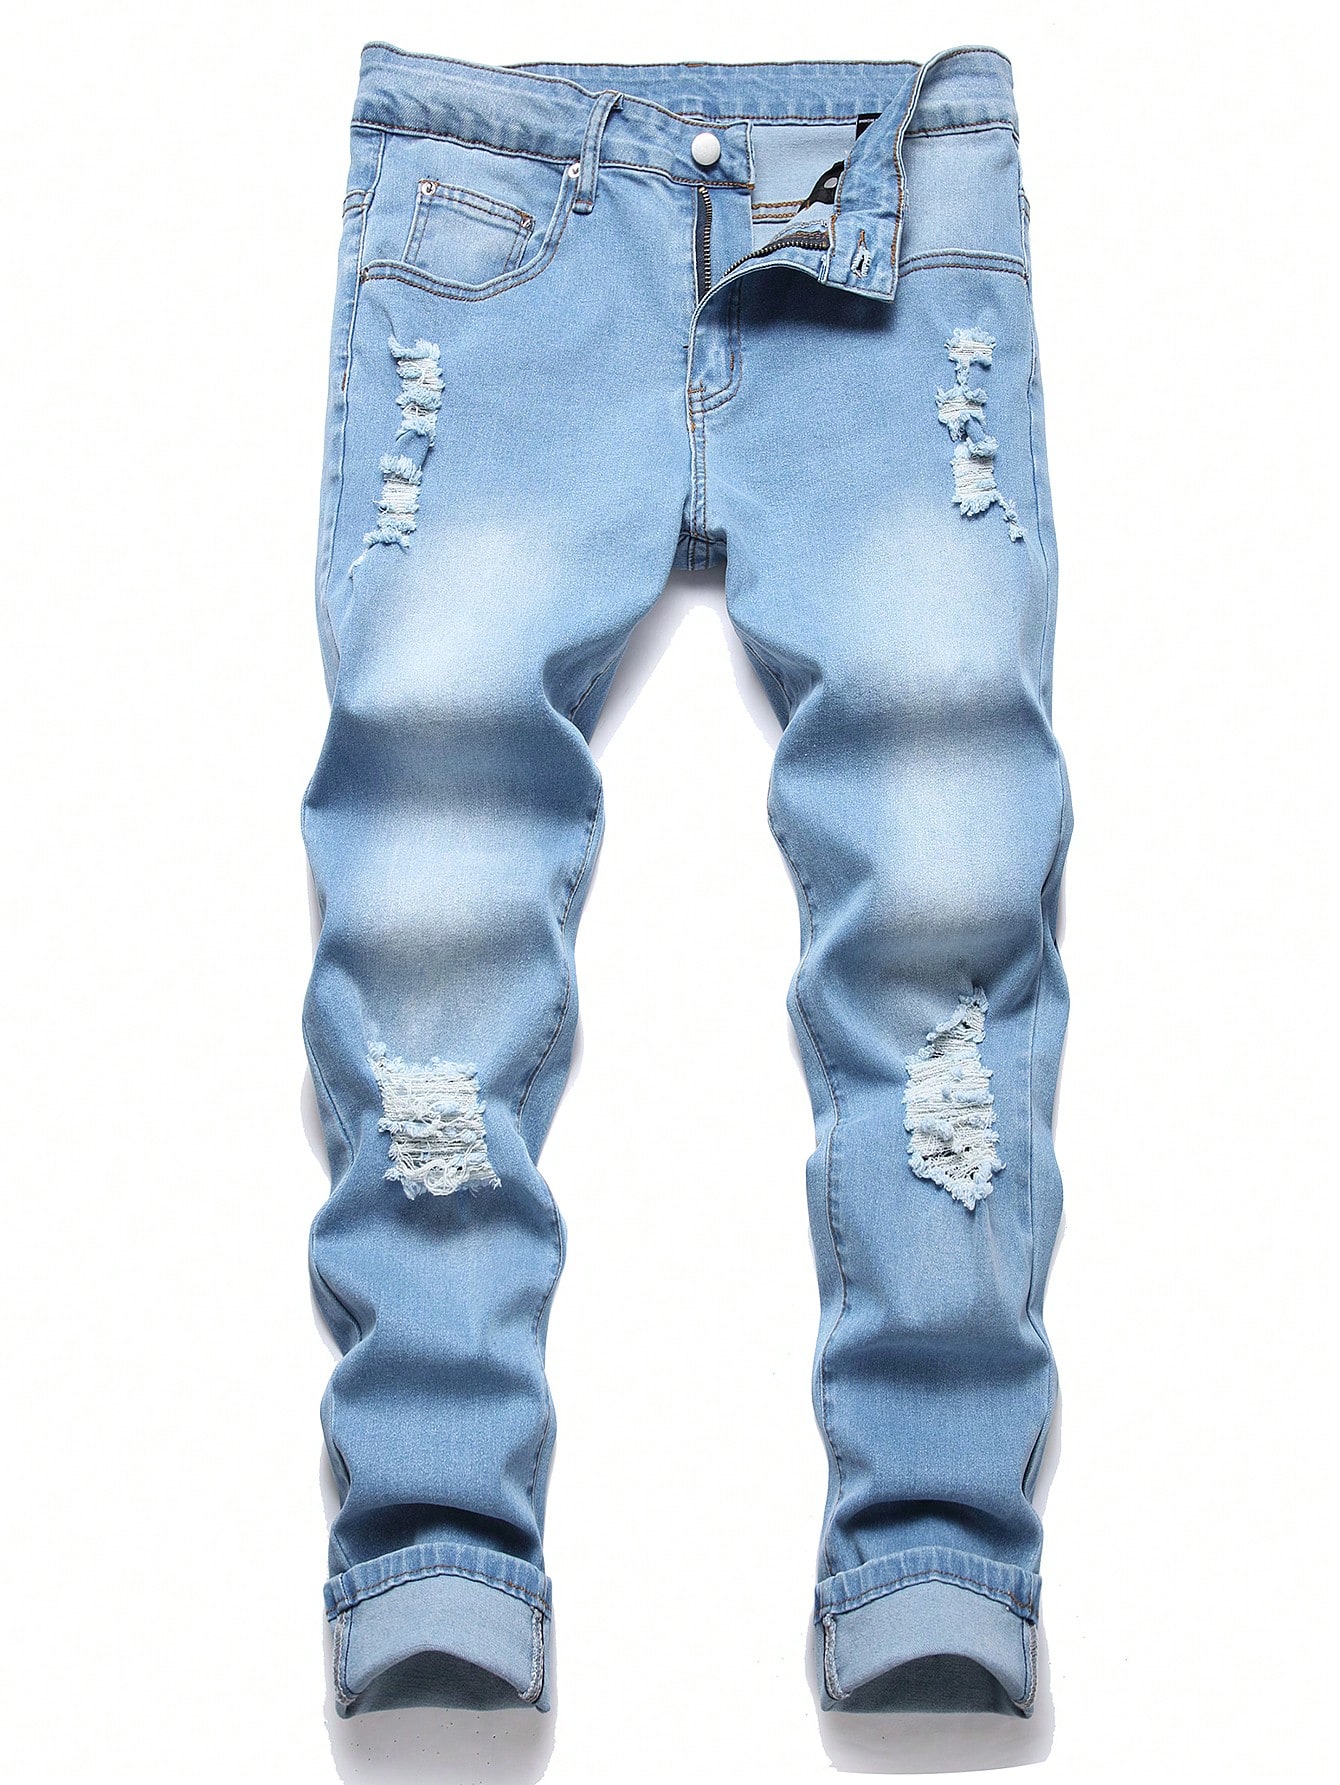 Мужские рваные джинсы скинни Manfinity EMRG, средняя стирка